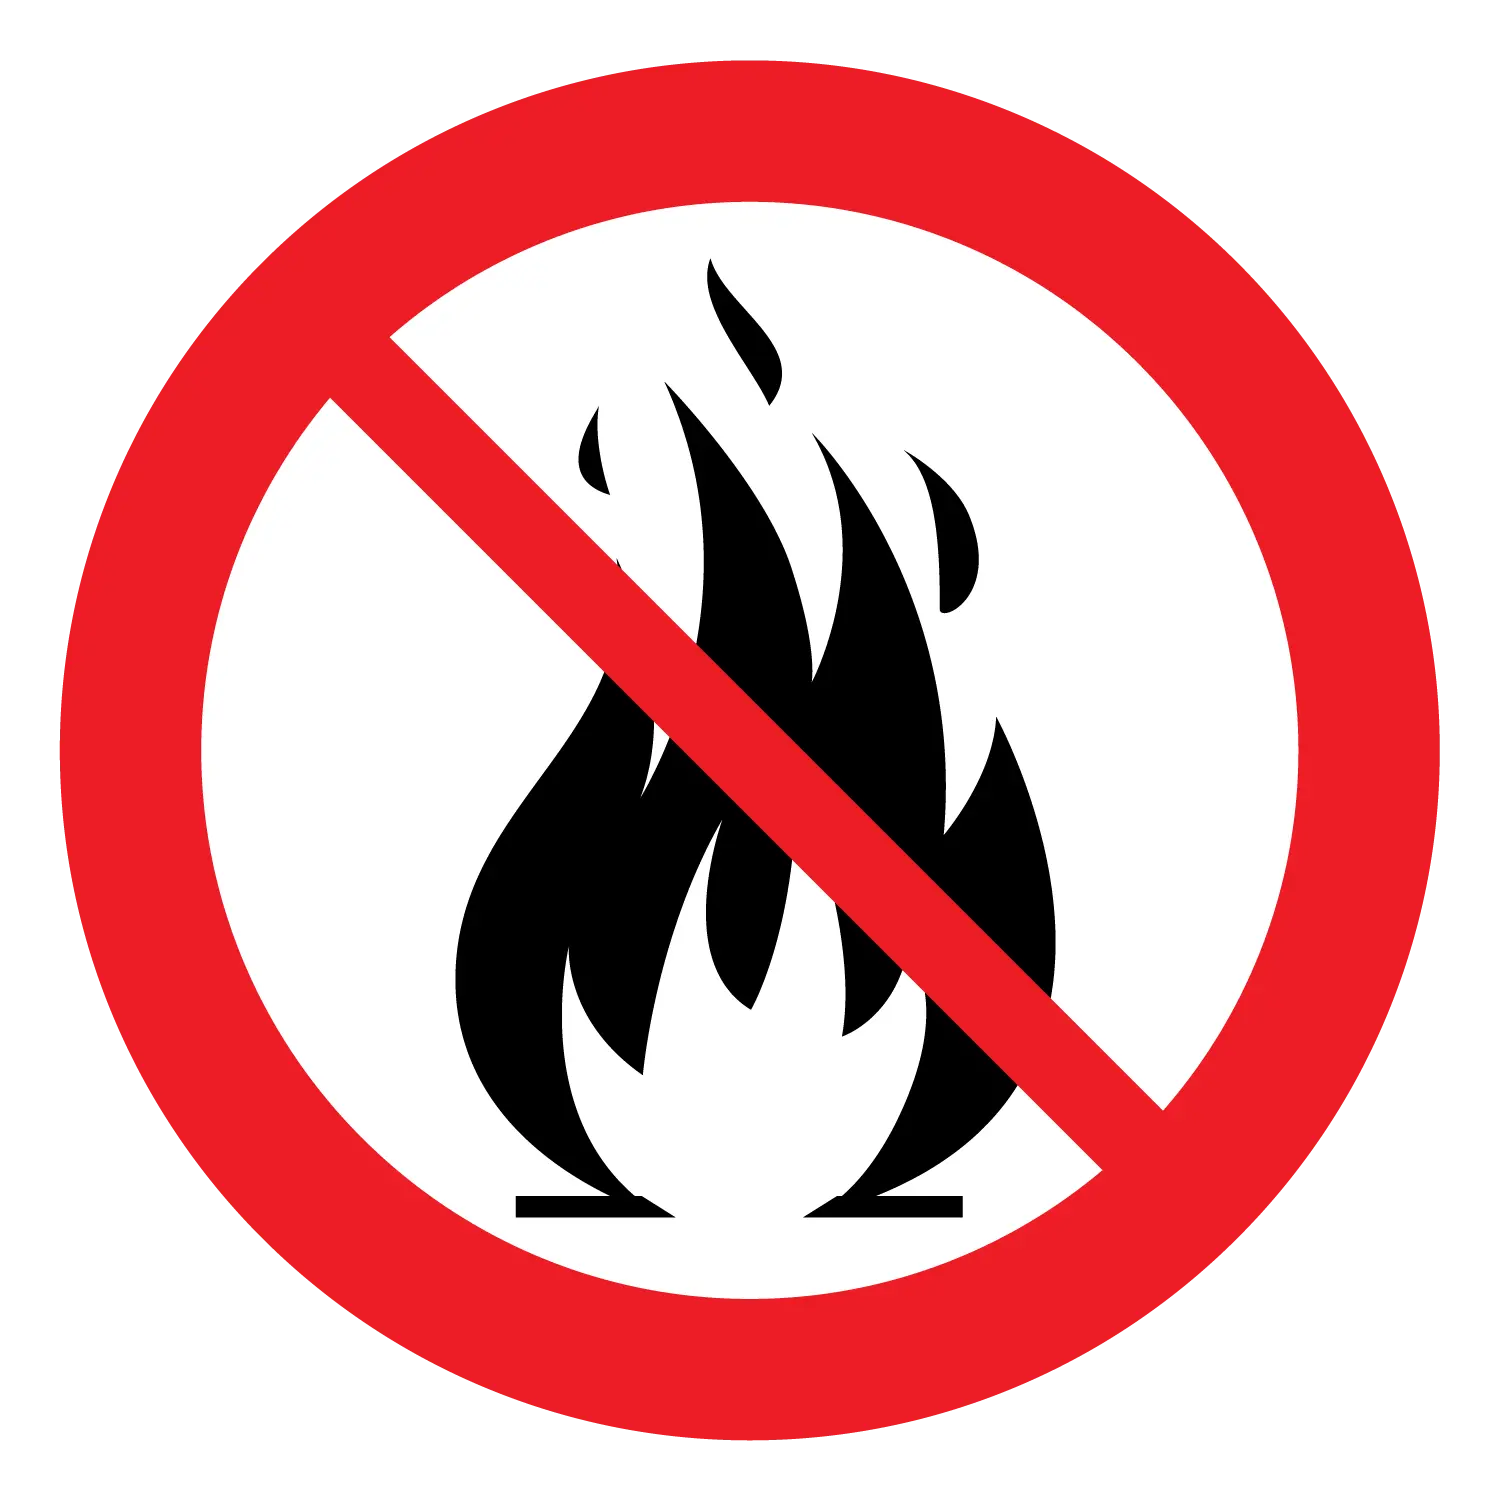 Grafisk symbol med eld överstruken för att symbolisera att eldning är förbjudet.